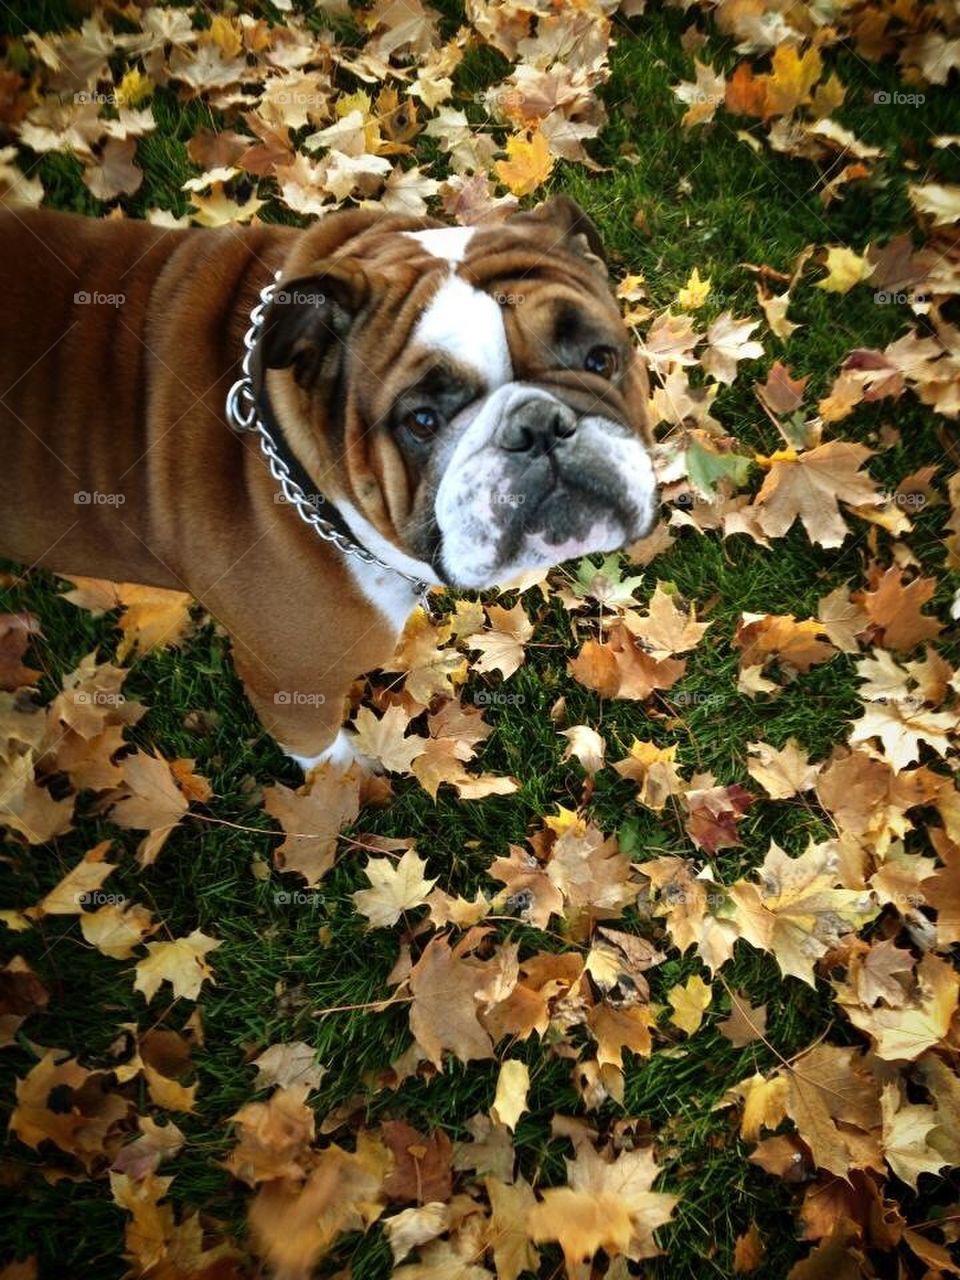 Bulldog in Fall